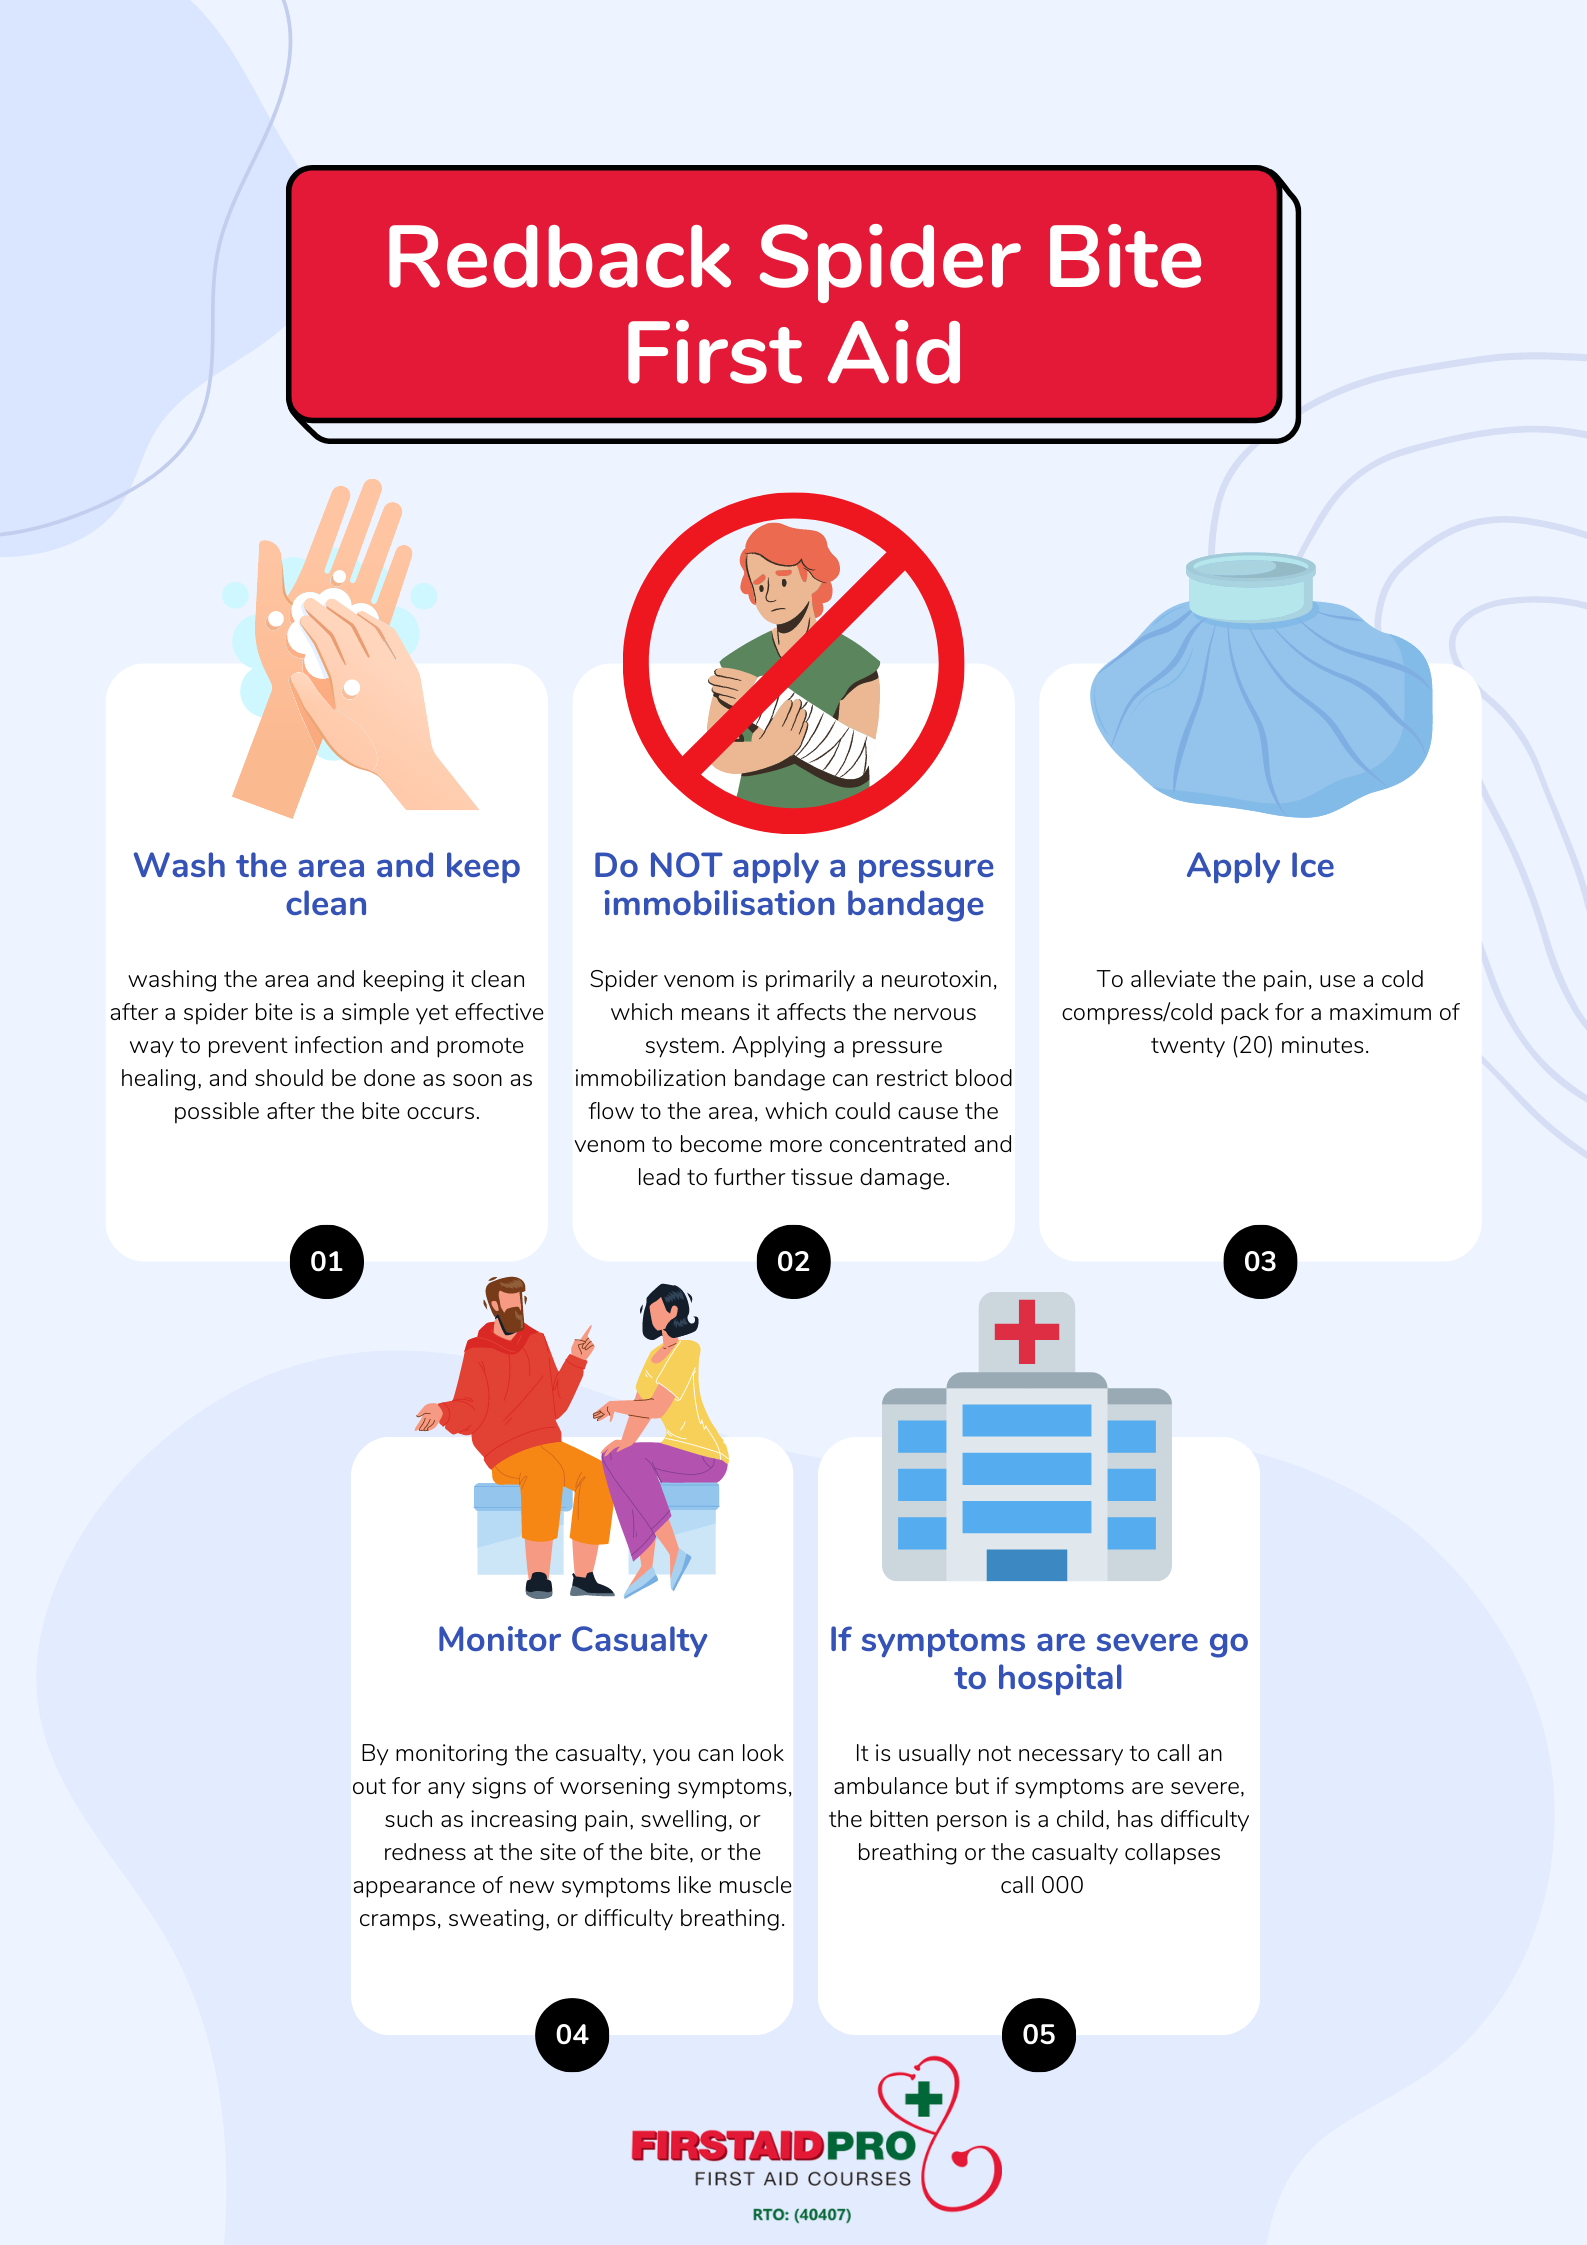 Redback spider bite first aid